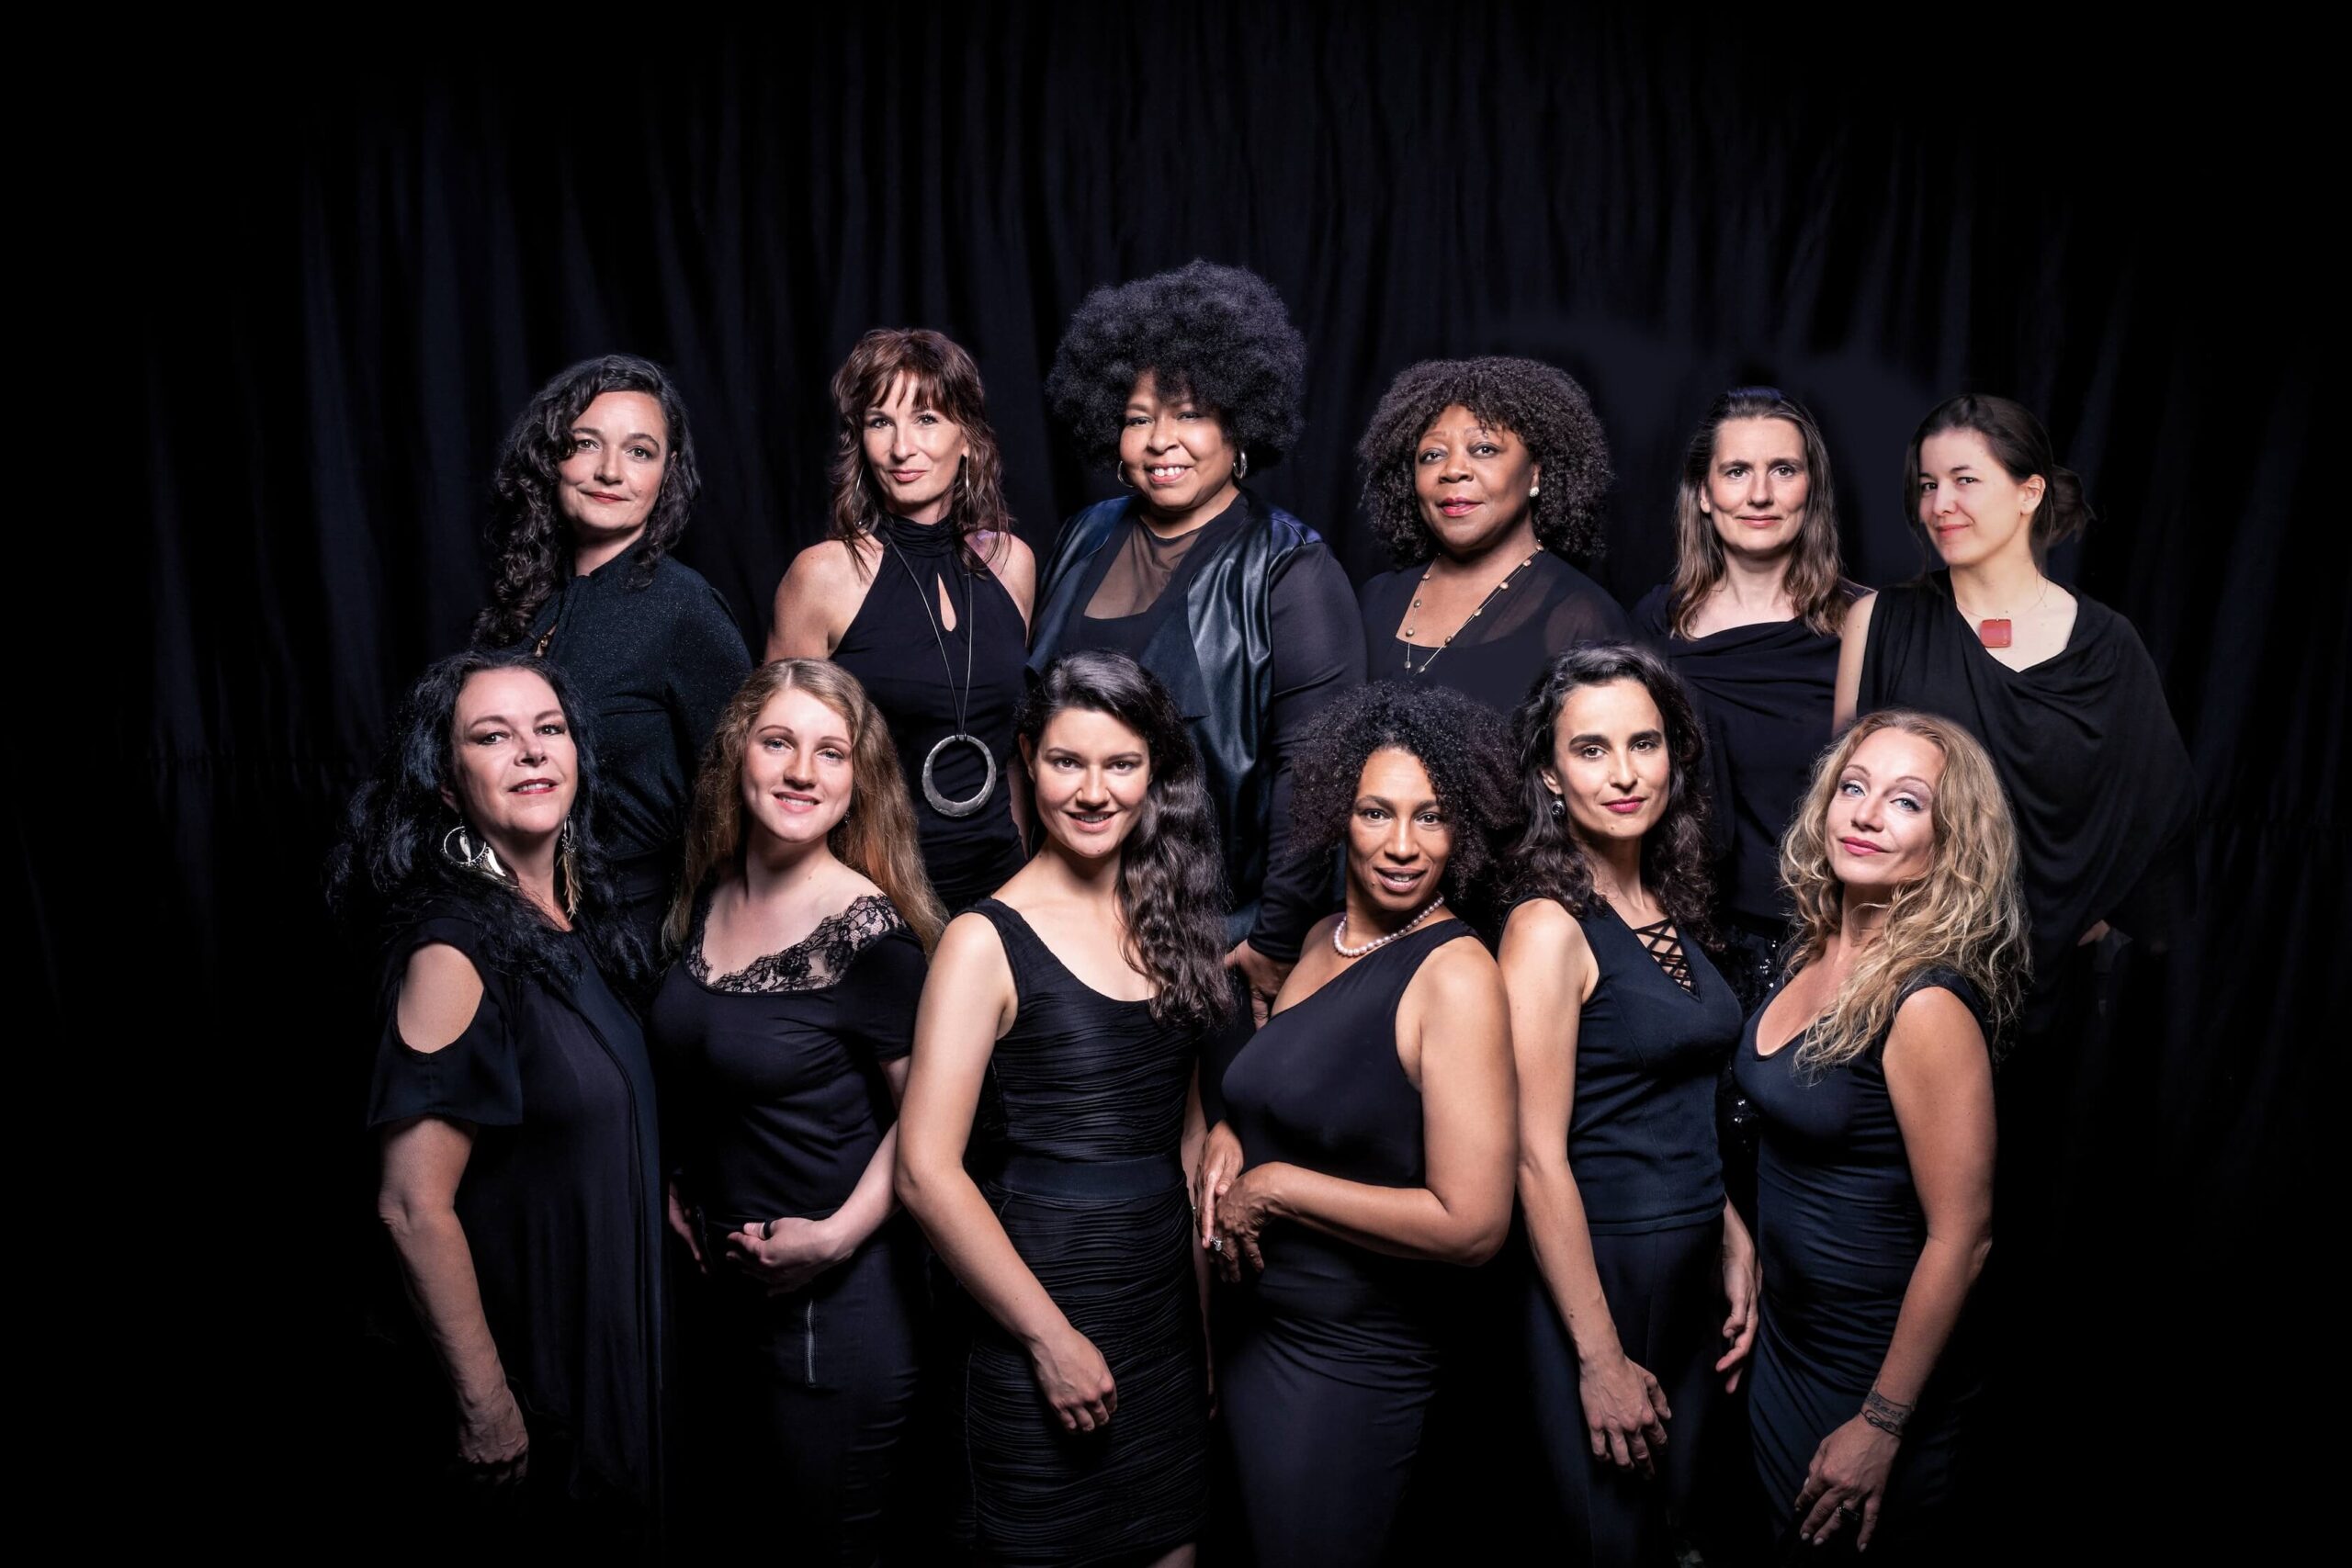 Gruppenfoto von der Band "Viennese Ladies"